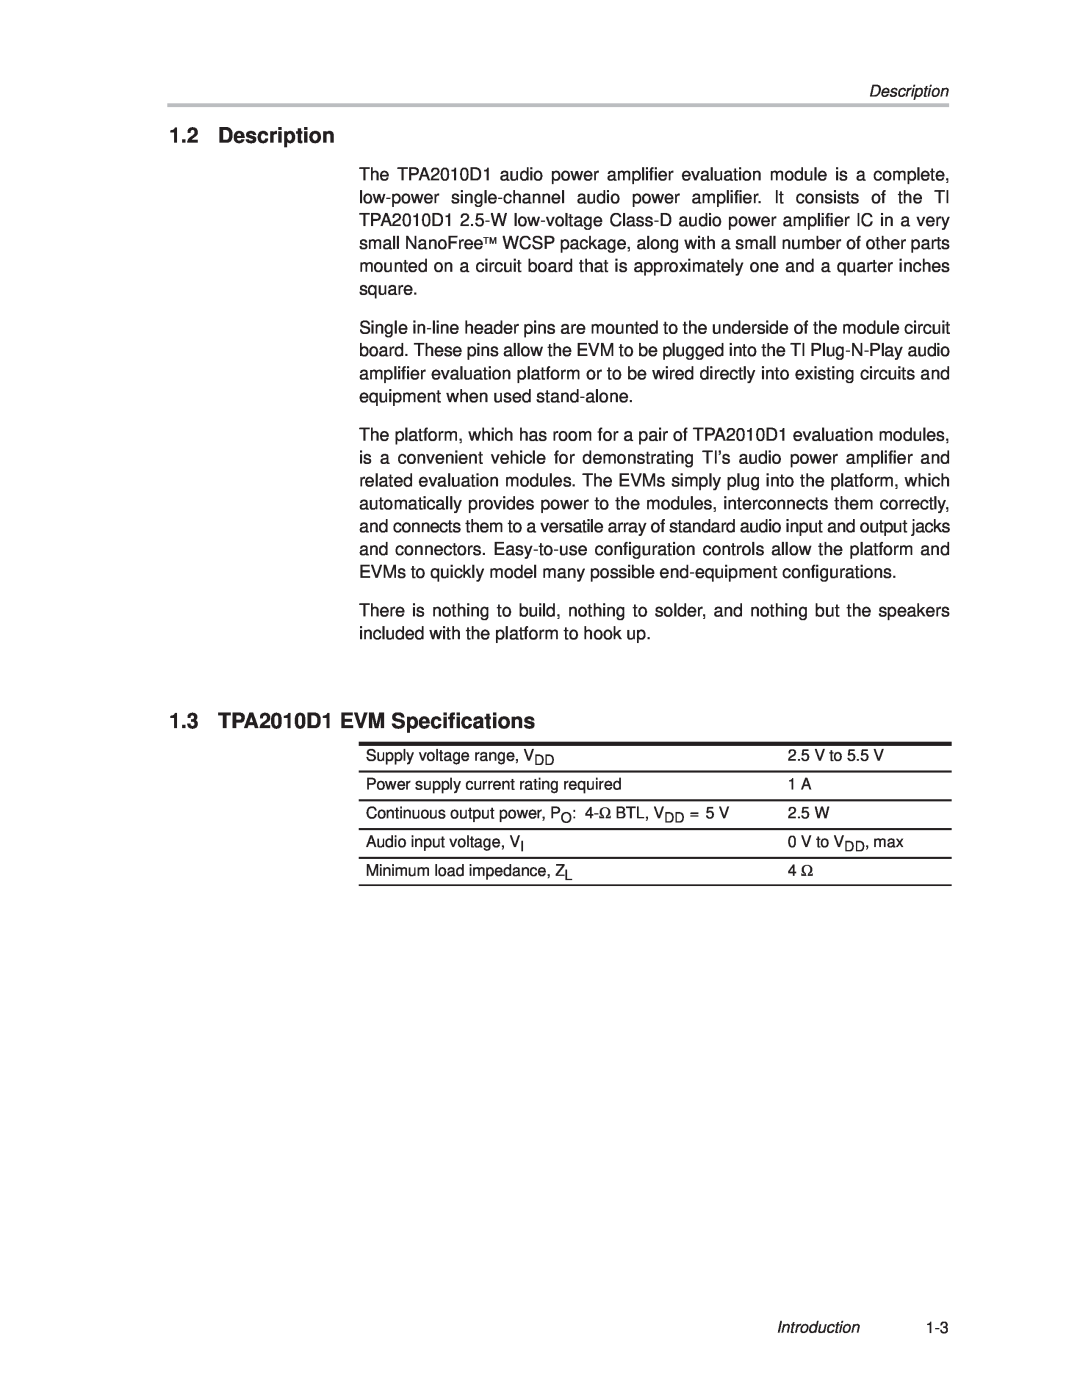 Texas Instruments 2004 manual Description, 1.3 TPA2010D1 EVM Specifications 